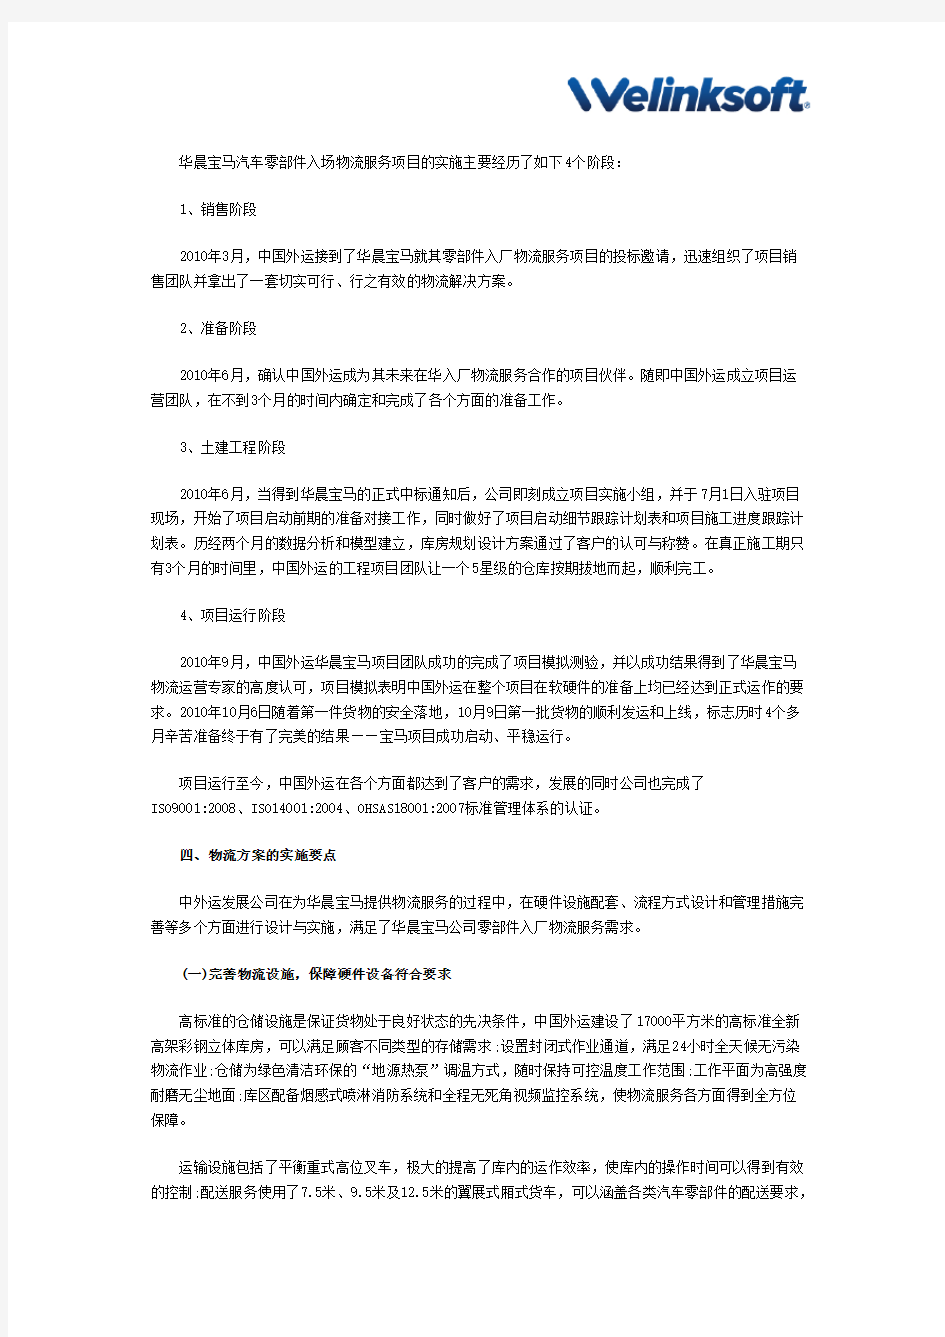 供应链管理案例中外运华晨宝马汽车零部件入厂物流服务解决方案